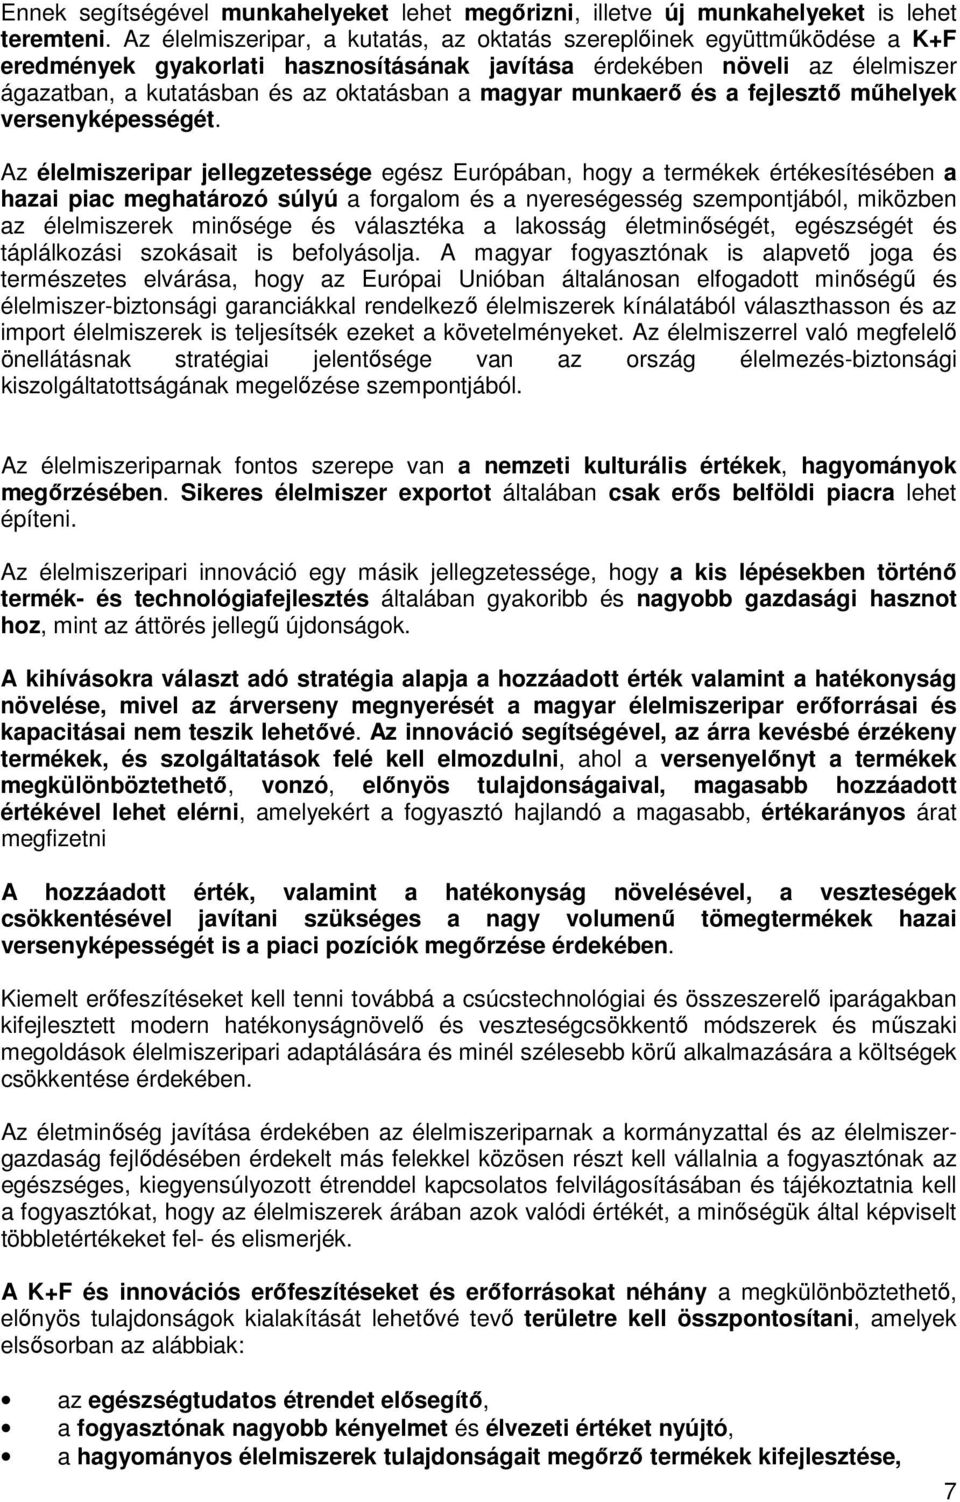 magyar munkaerő és a fejlesztő műhelyek versenyképességét.